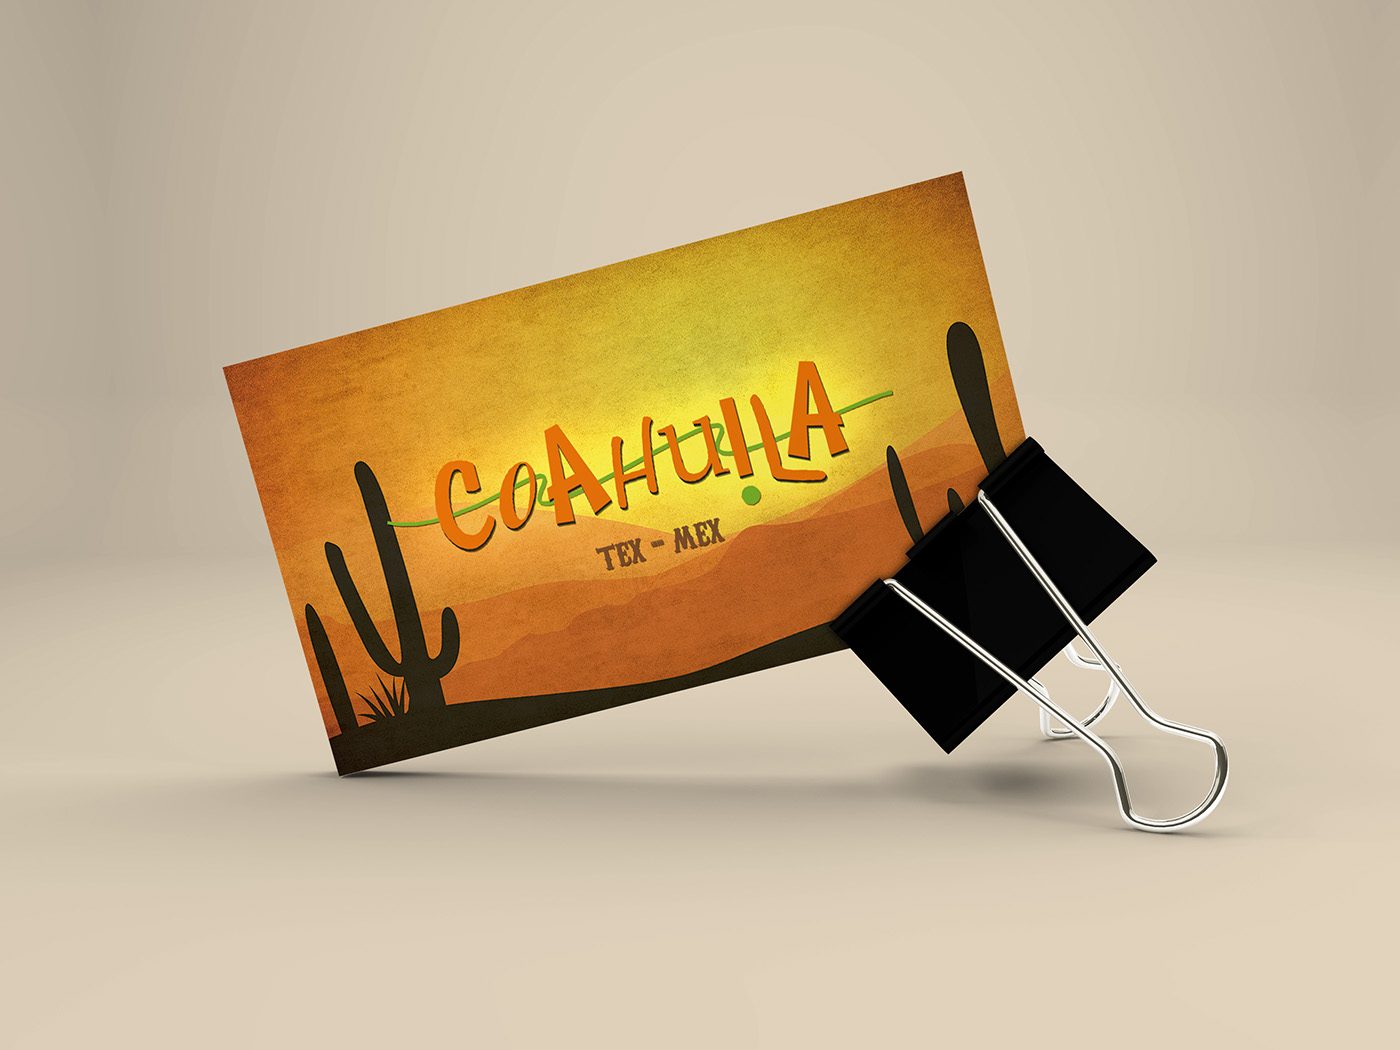 cartão de visitas Coahuila Tex-Mex criação design gráfico Design de Impressos Bussines card